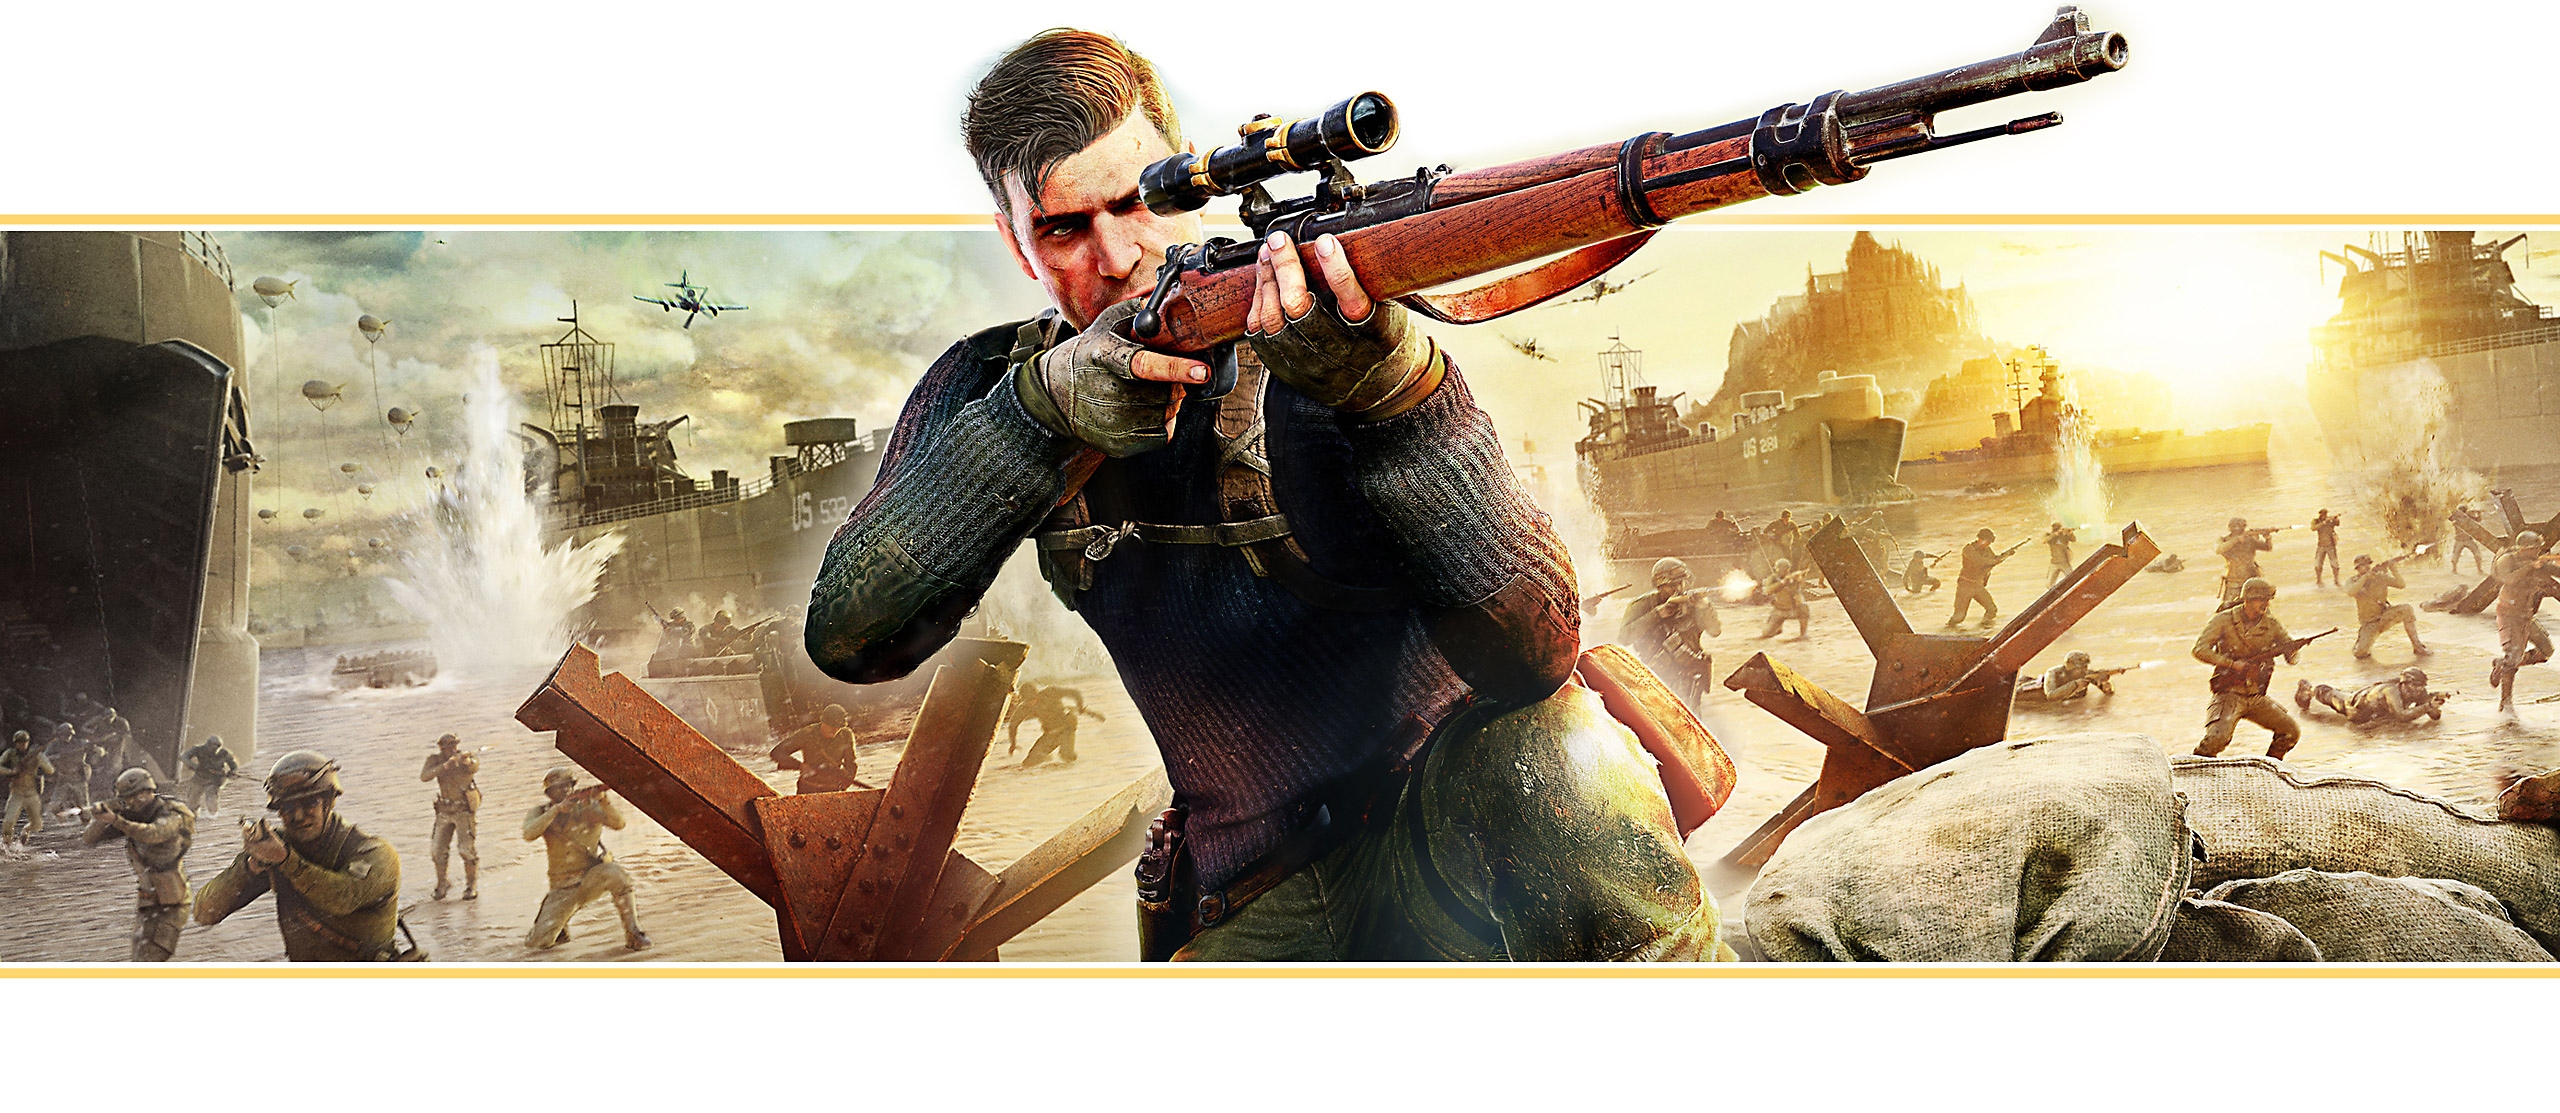 Sniper Elite 5 - Banner in evidenza basato sull'immagine principale del gioco che mostra il protagonista che prende la mira con un fucile di precisione